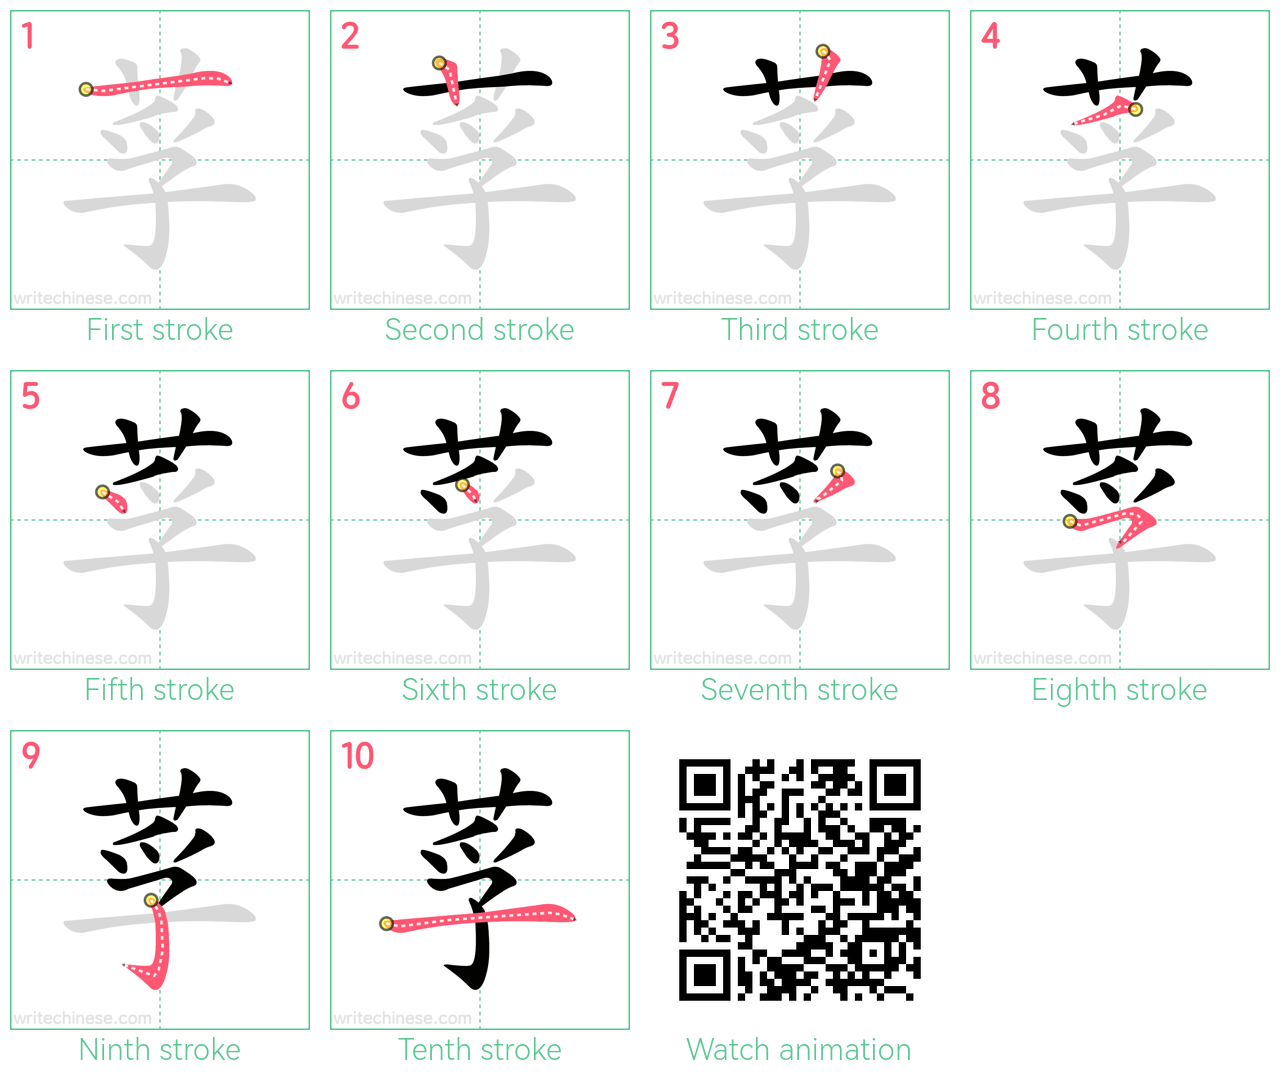 莩 step-by-step stroke order diagrams